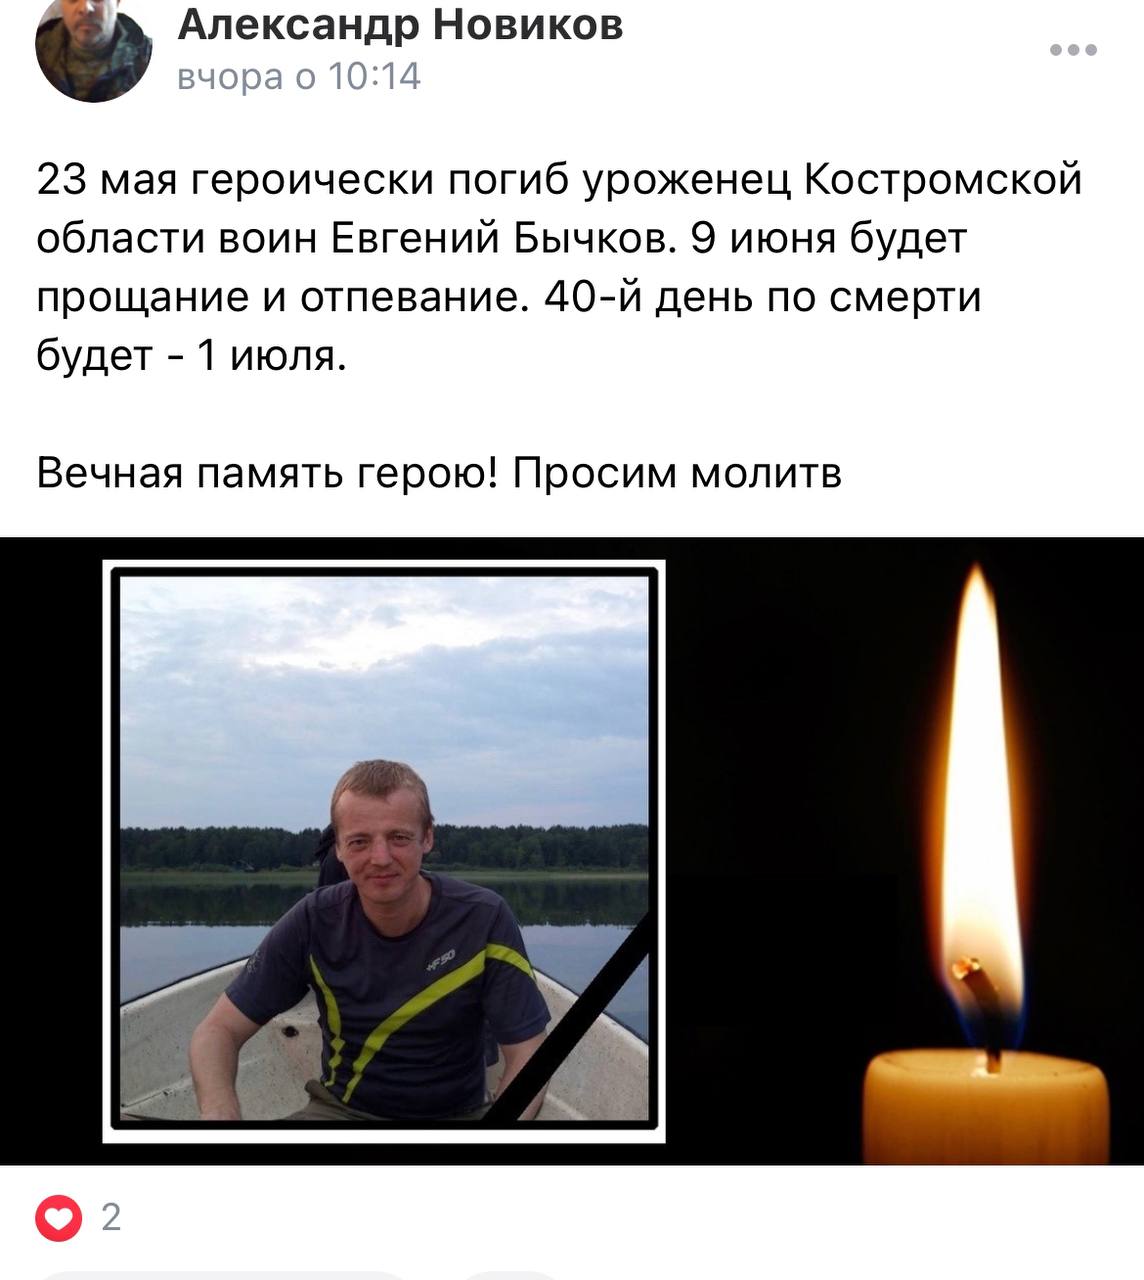 Бычков Евгений погиб 23.05.2022 из региона Костромская область, 